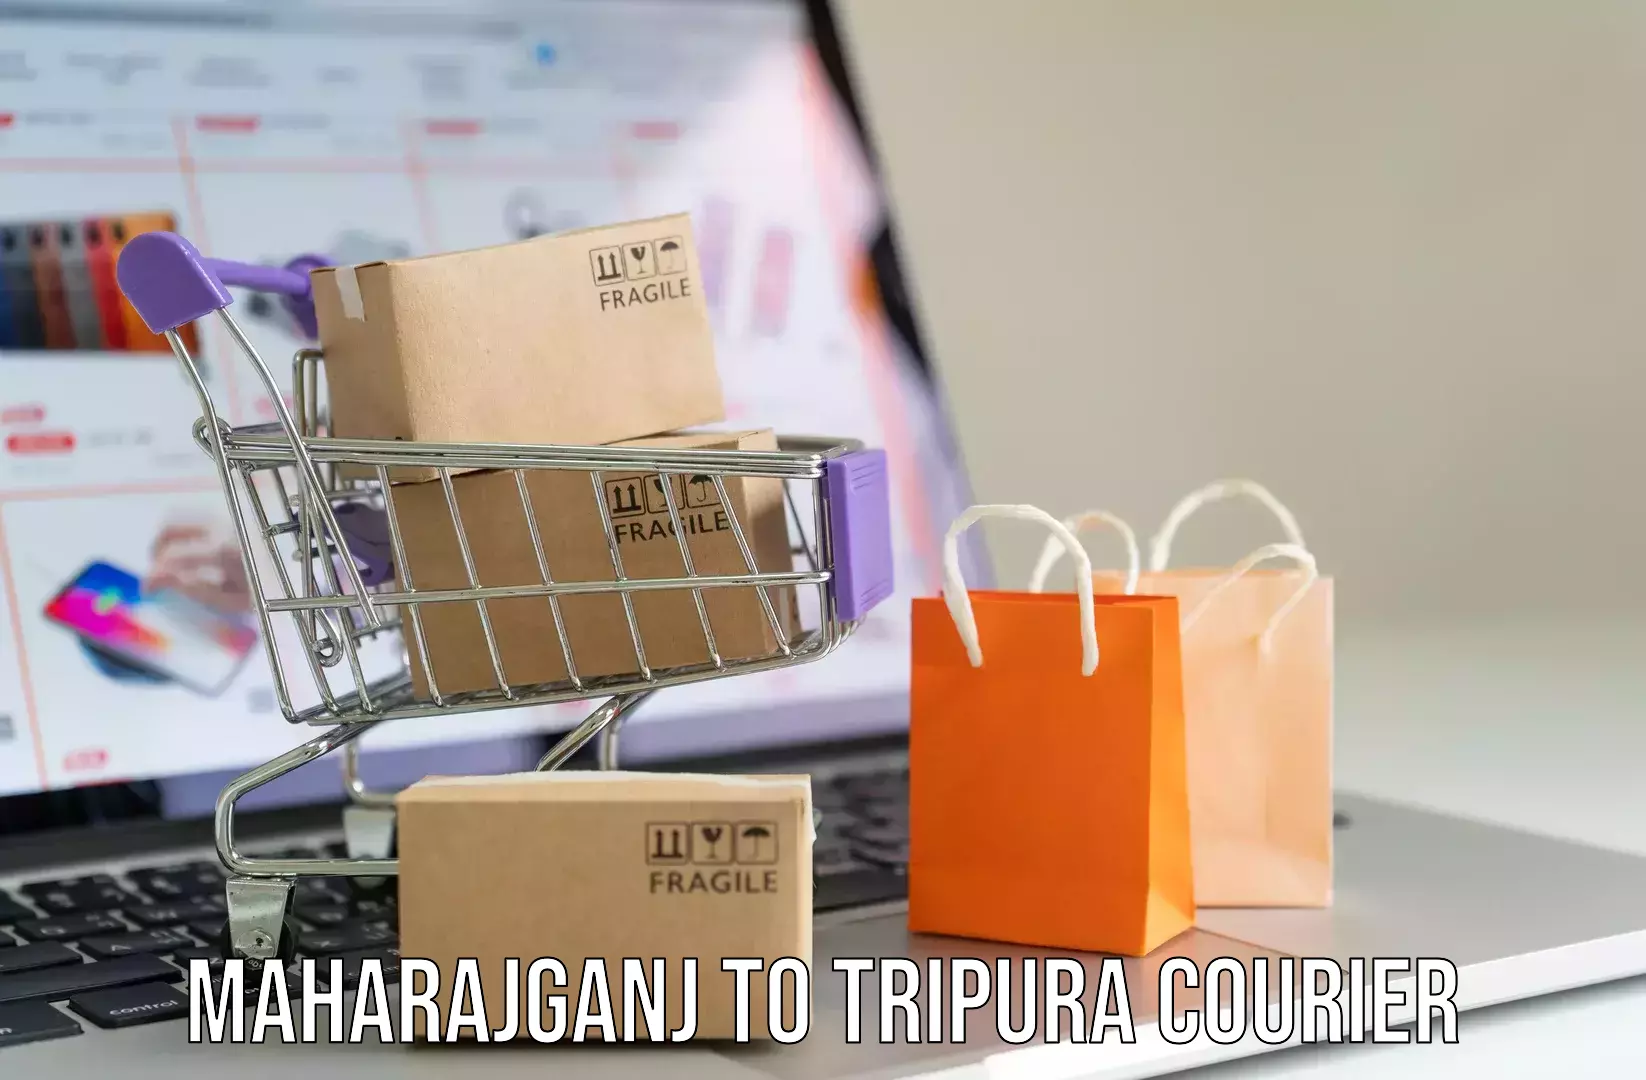 Luggage shipping specialists Maharajganj to IIIT Agartala